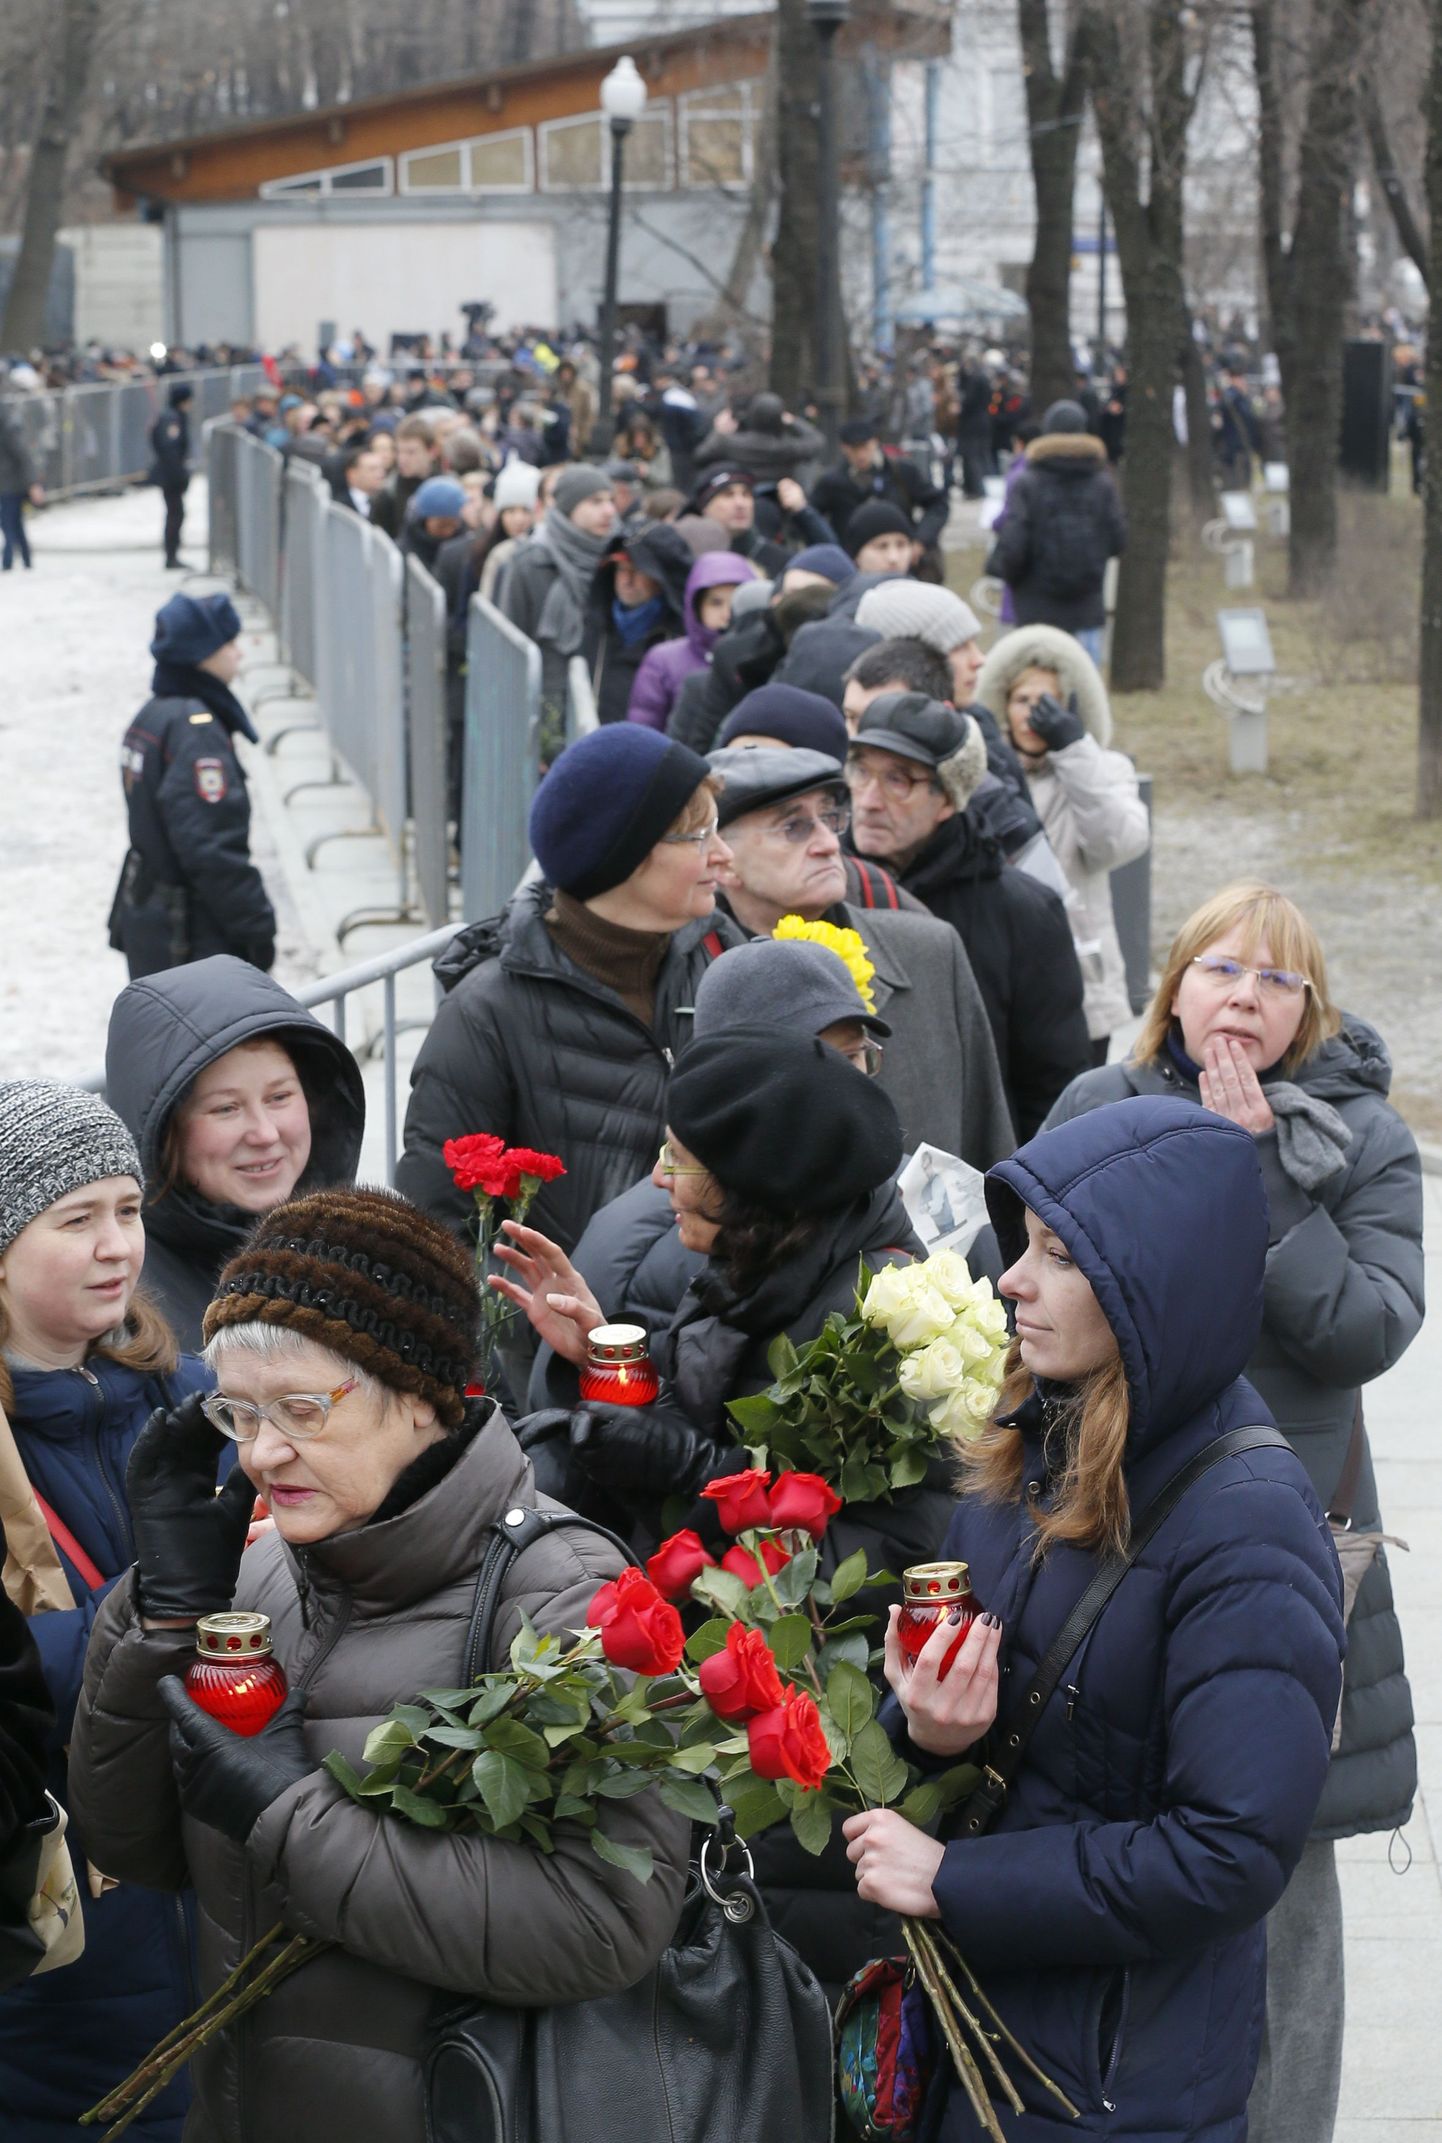 Inimesed ootavad järjekorras, et pääseda sisse Sahharovi ühiskondlikku keskusesse, kus toimub Boriss Nemtsovi ärasaatmine.